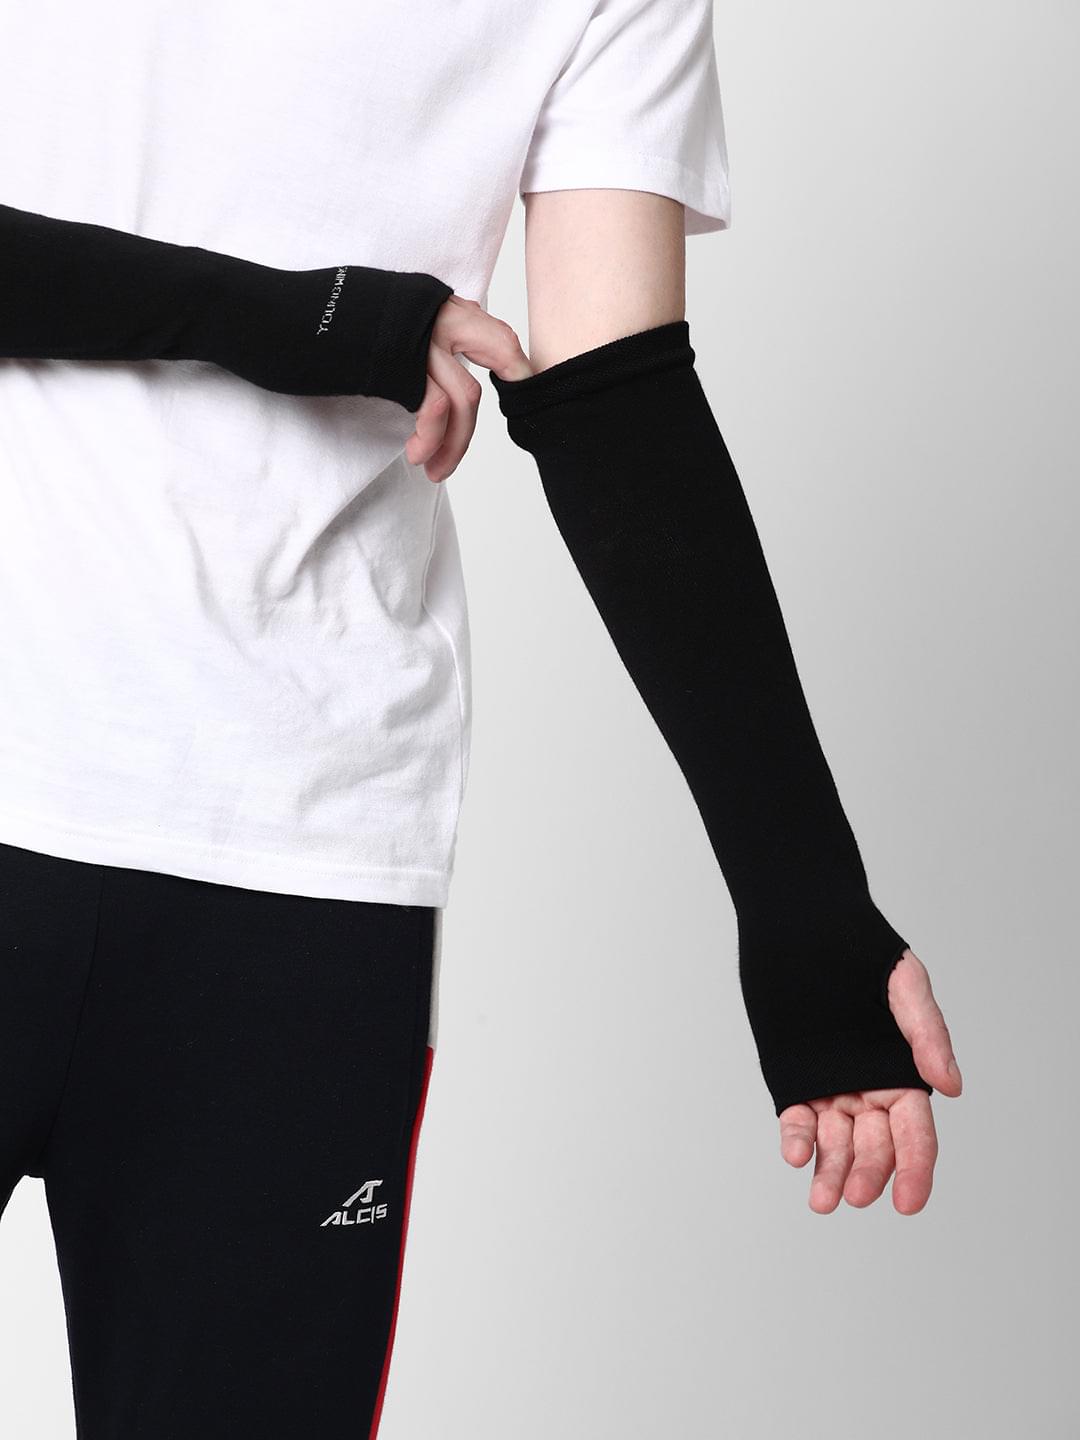 Antibacterial Arm Protectors/Sleeves for Men (Pack of 1 - Pair, UPF 50+)